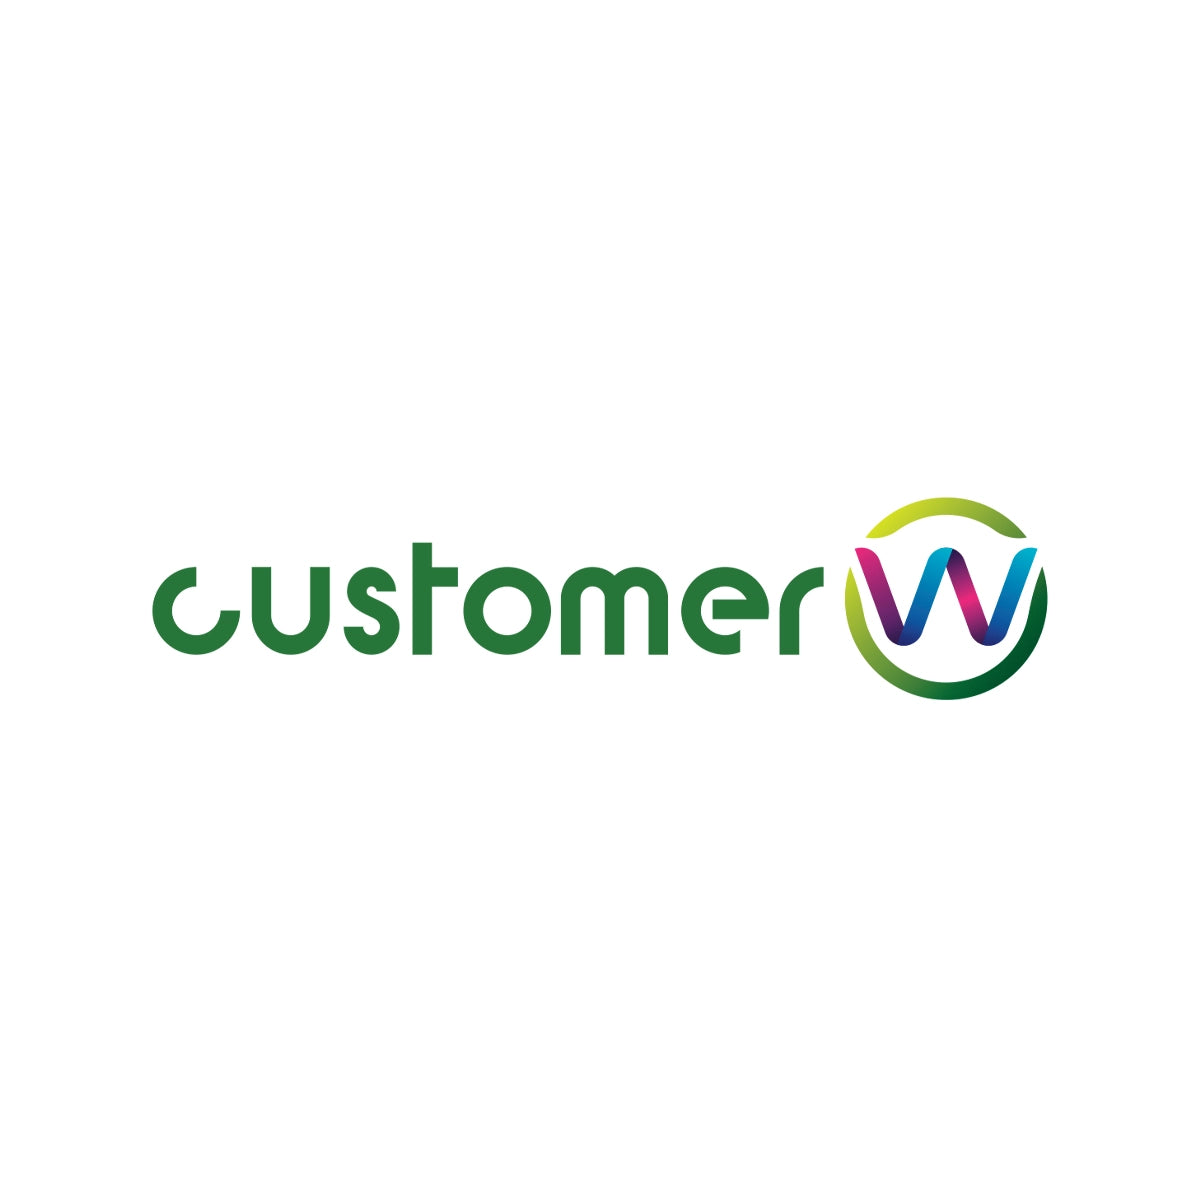 customerw.com